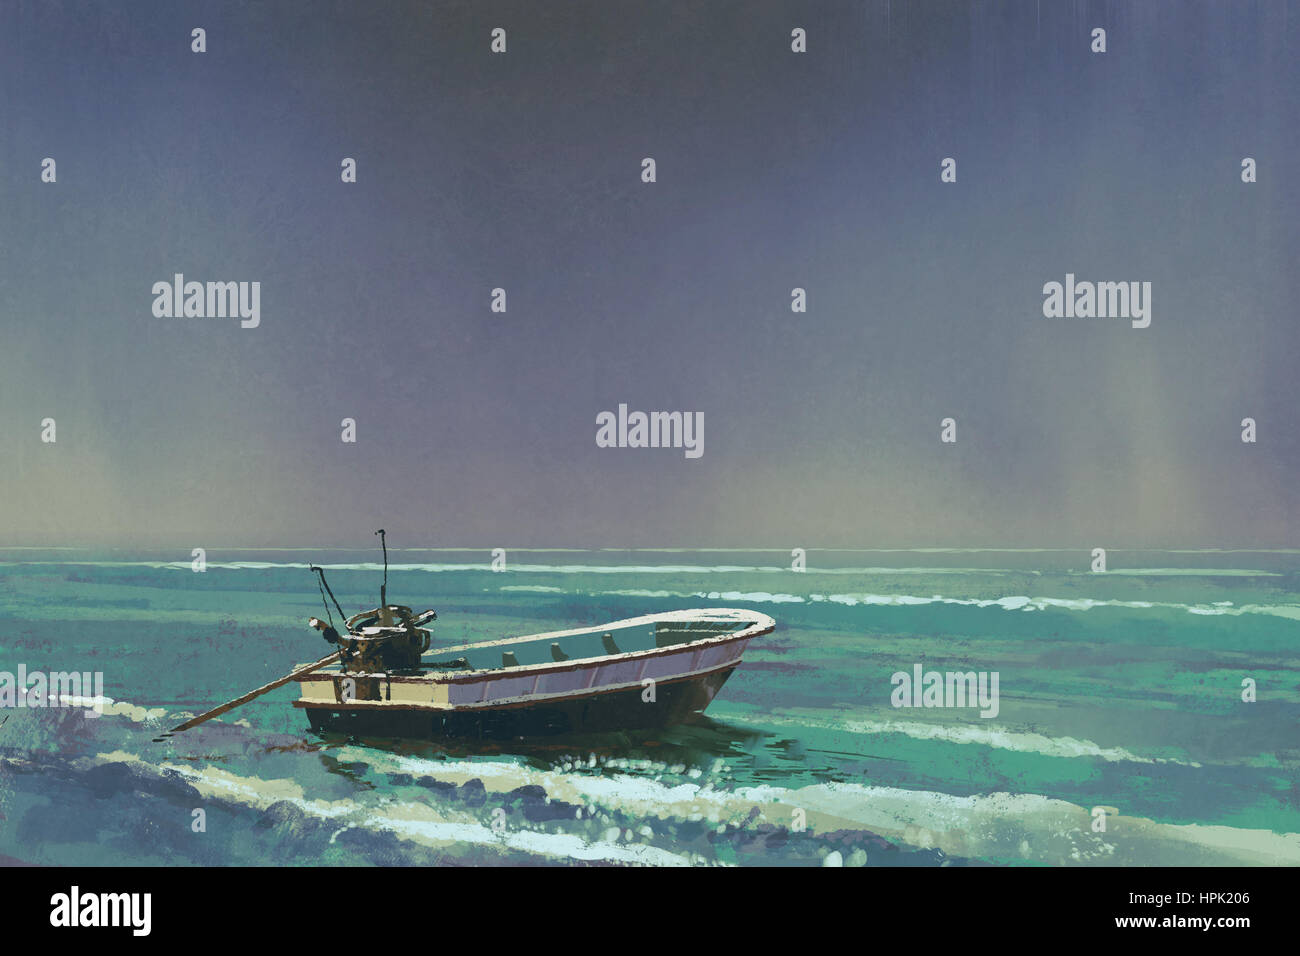 Le bateau sur la mer avec ciel gris sur fond,illustration peinture Banque D'Images